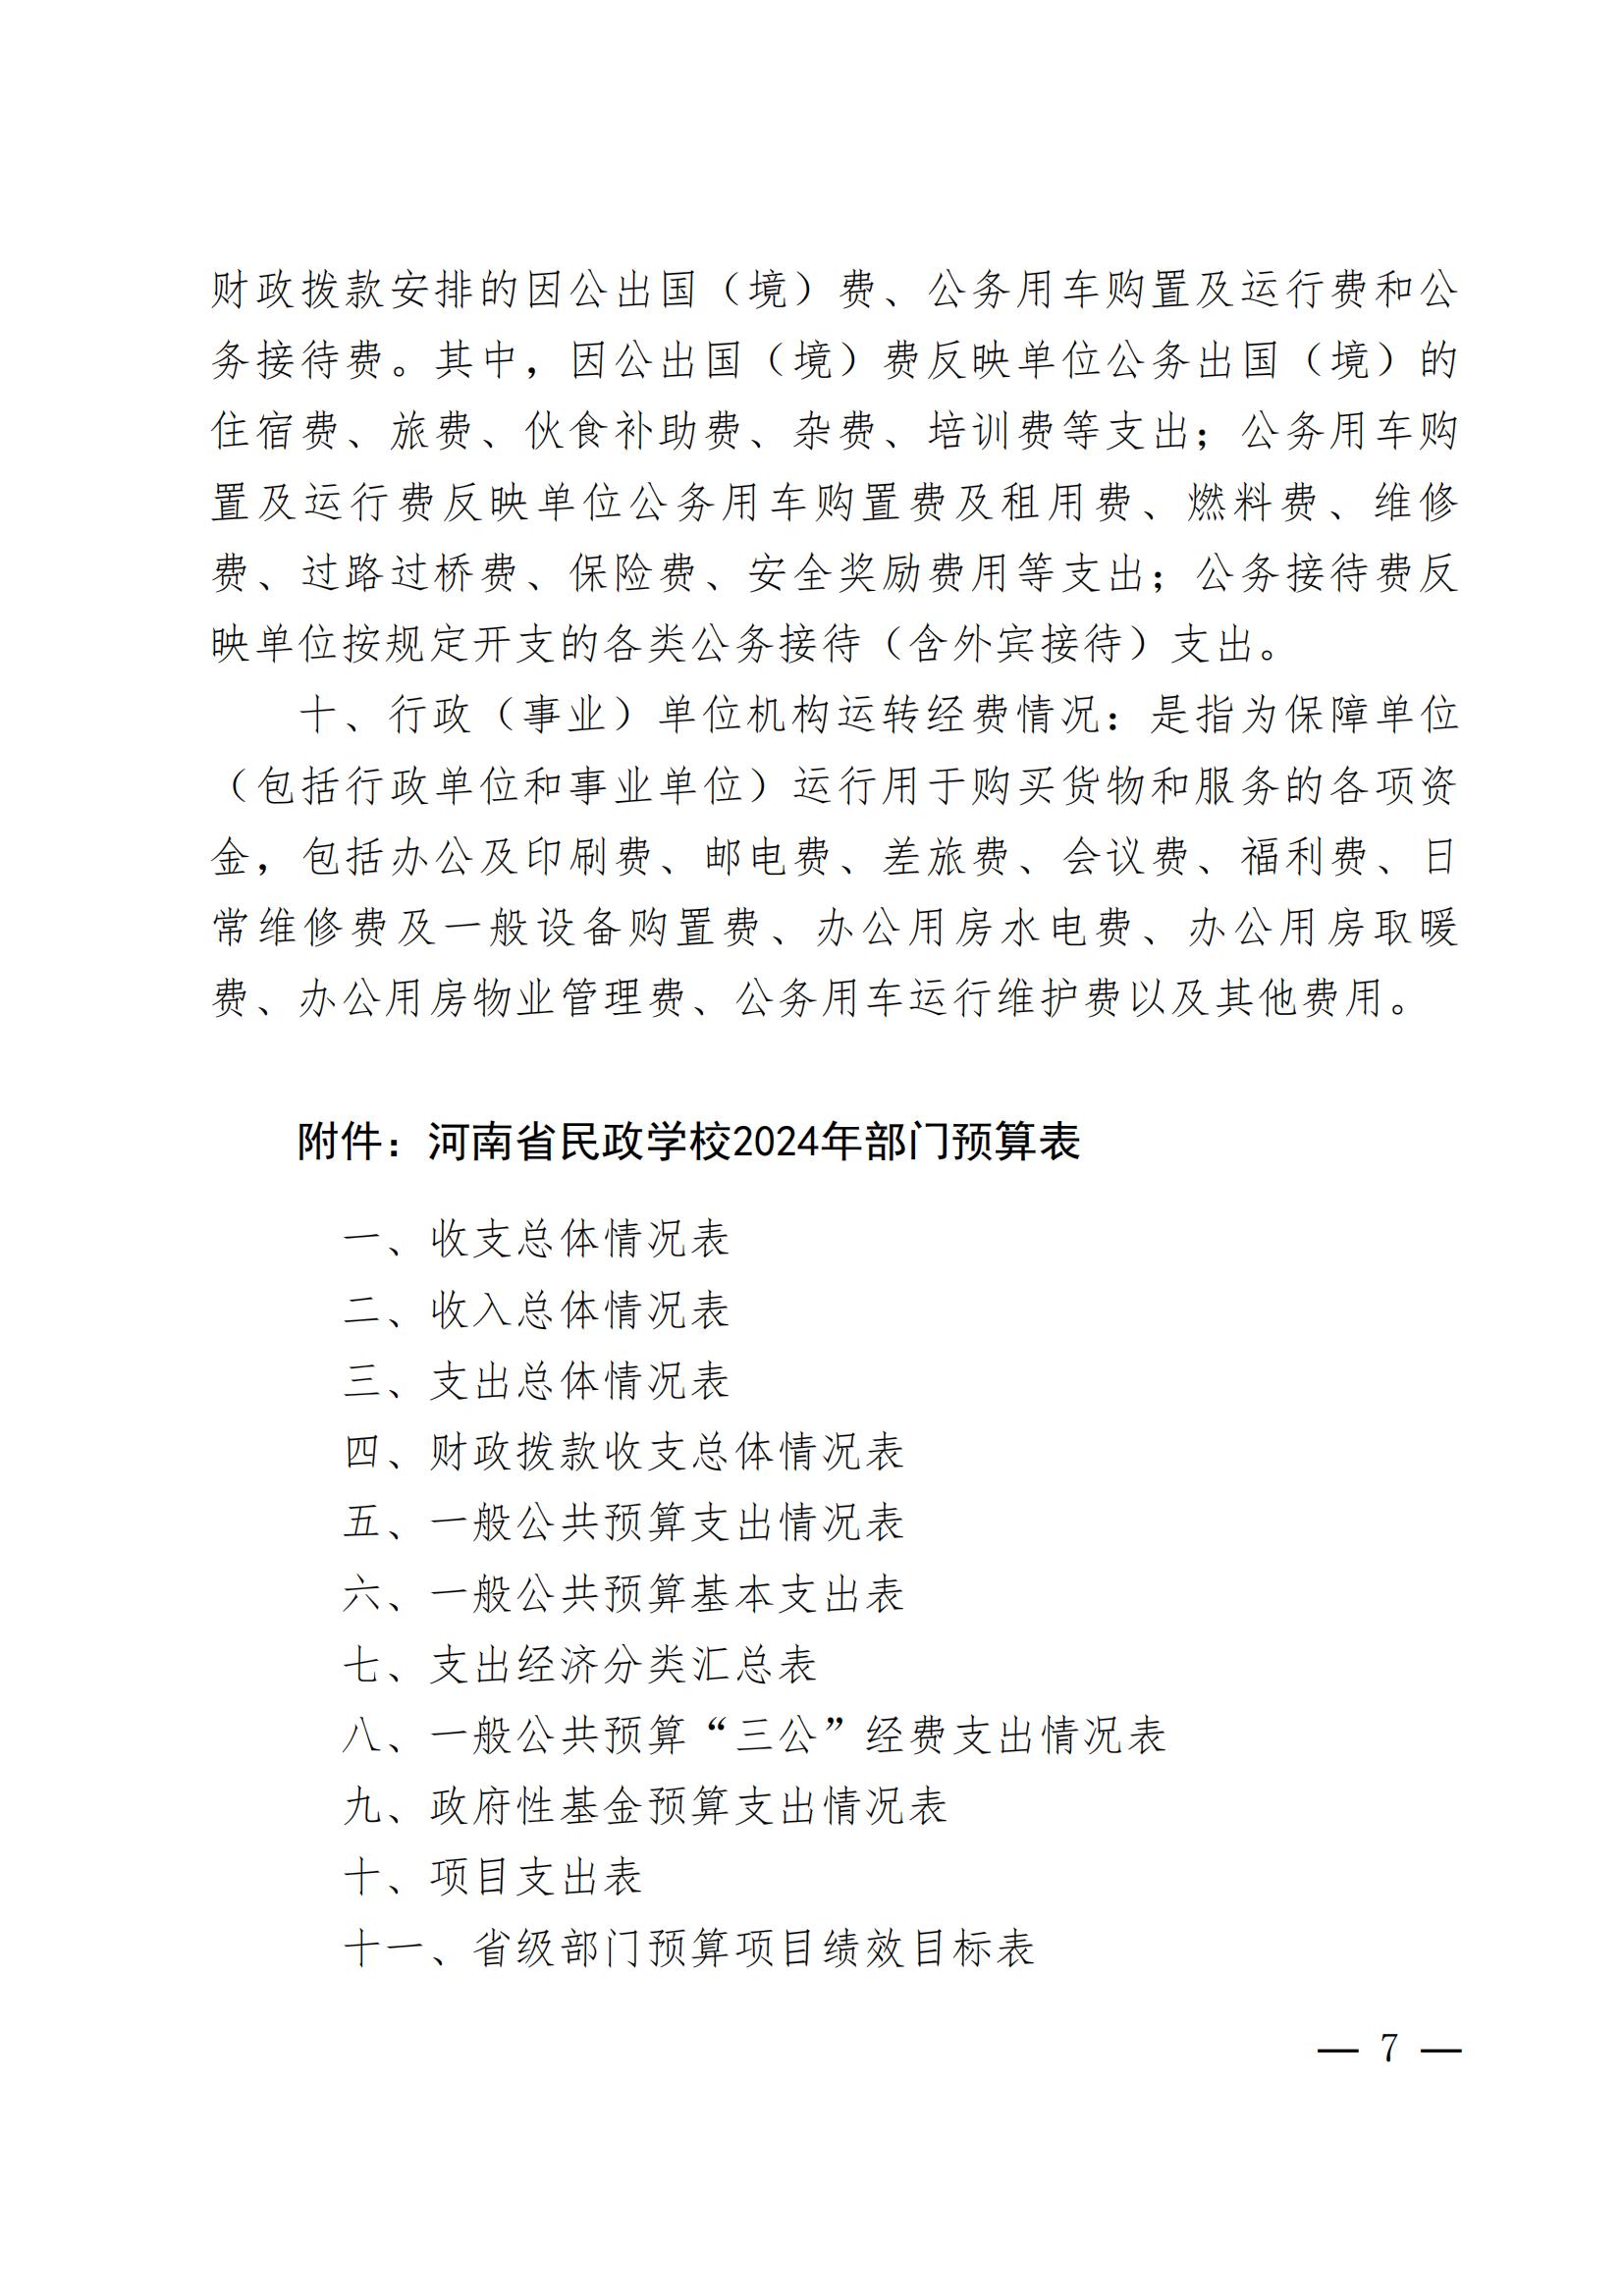 河南省民政学校2024年部门预算公开(1)_06.jpg